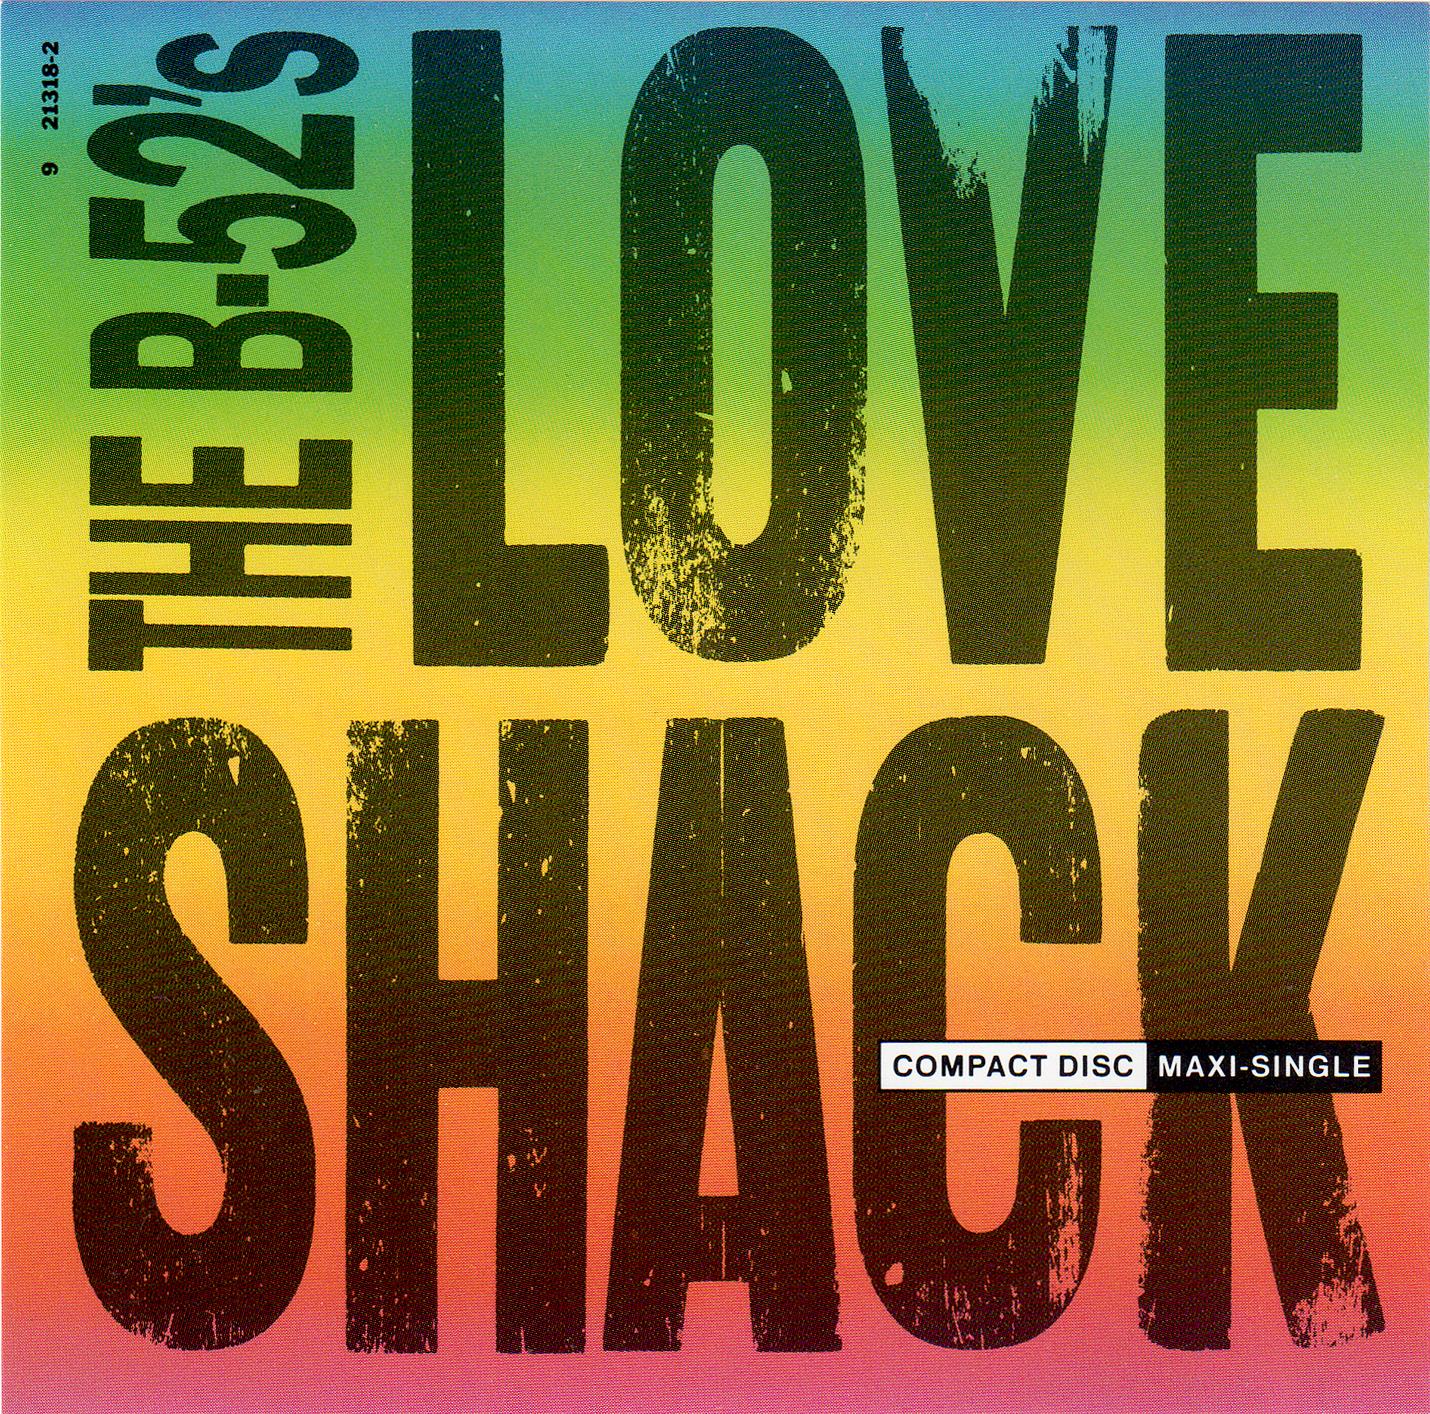 B-52's, The - Love Shack (Cds)(1989)B-52's, The - Love Shack (Cds)(1989)